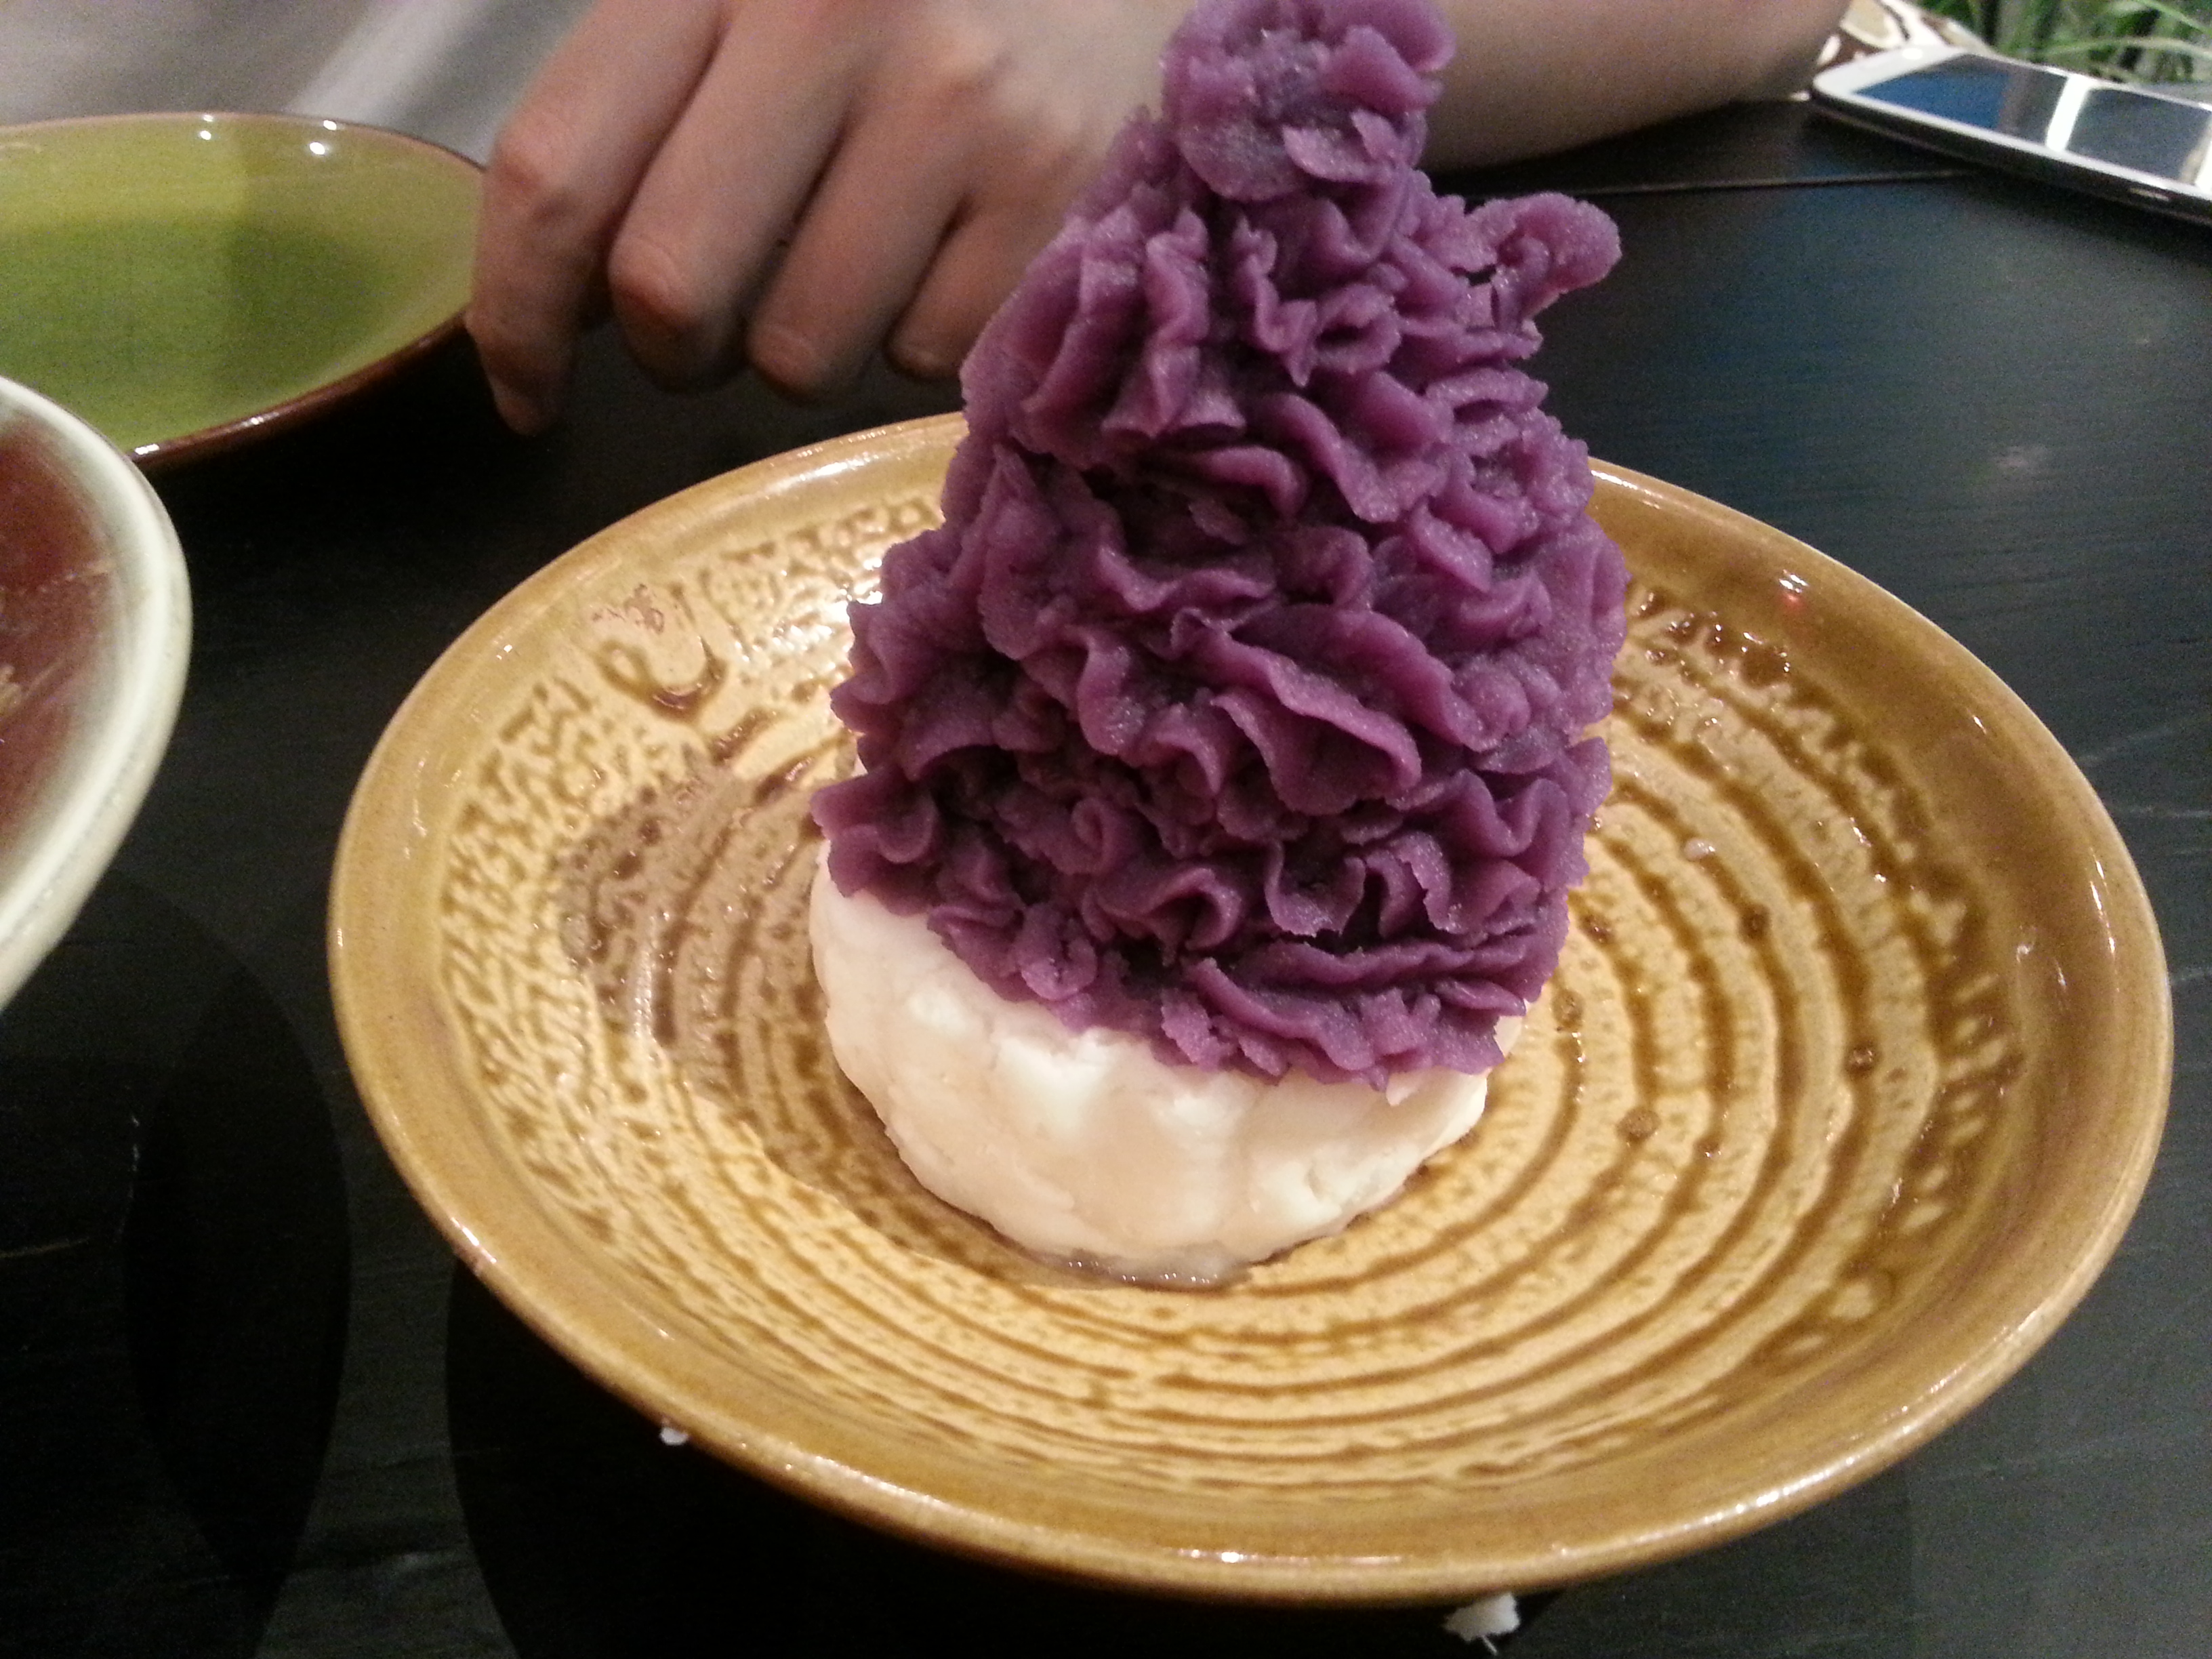 野生紫薯山药图片图片